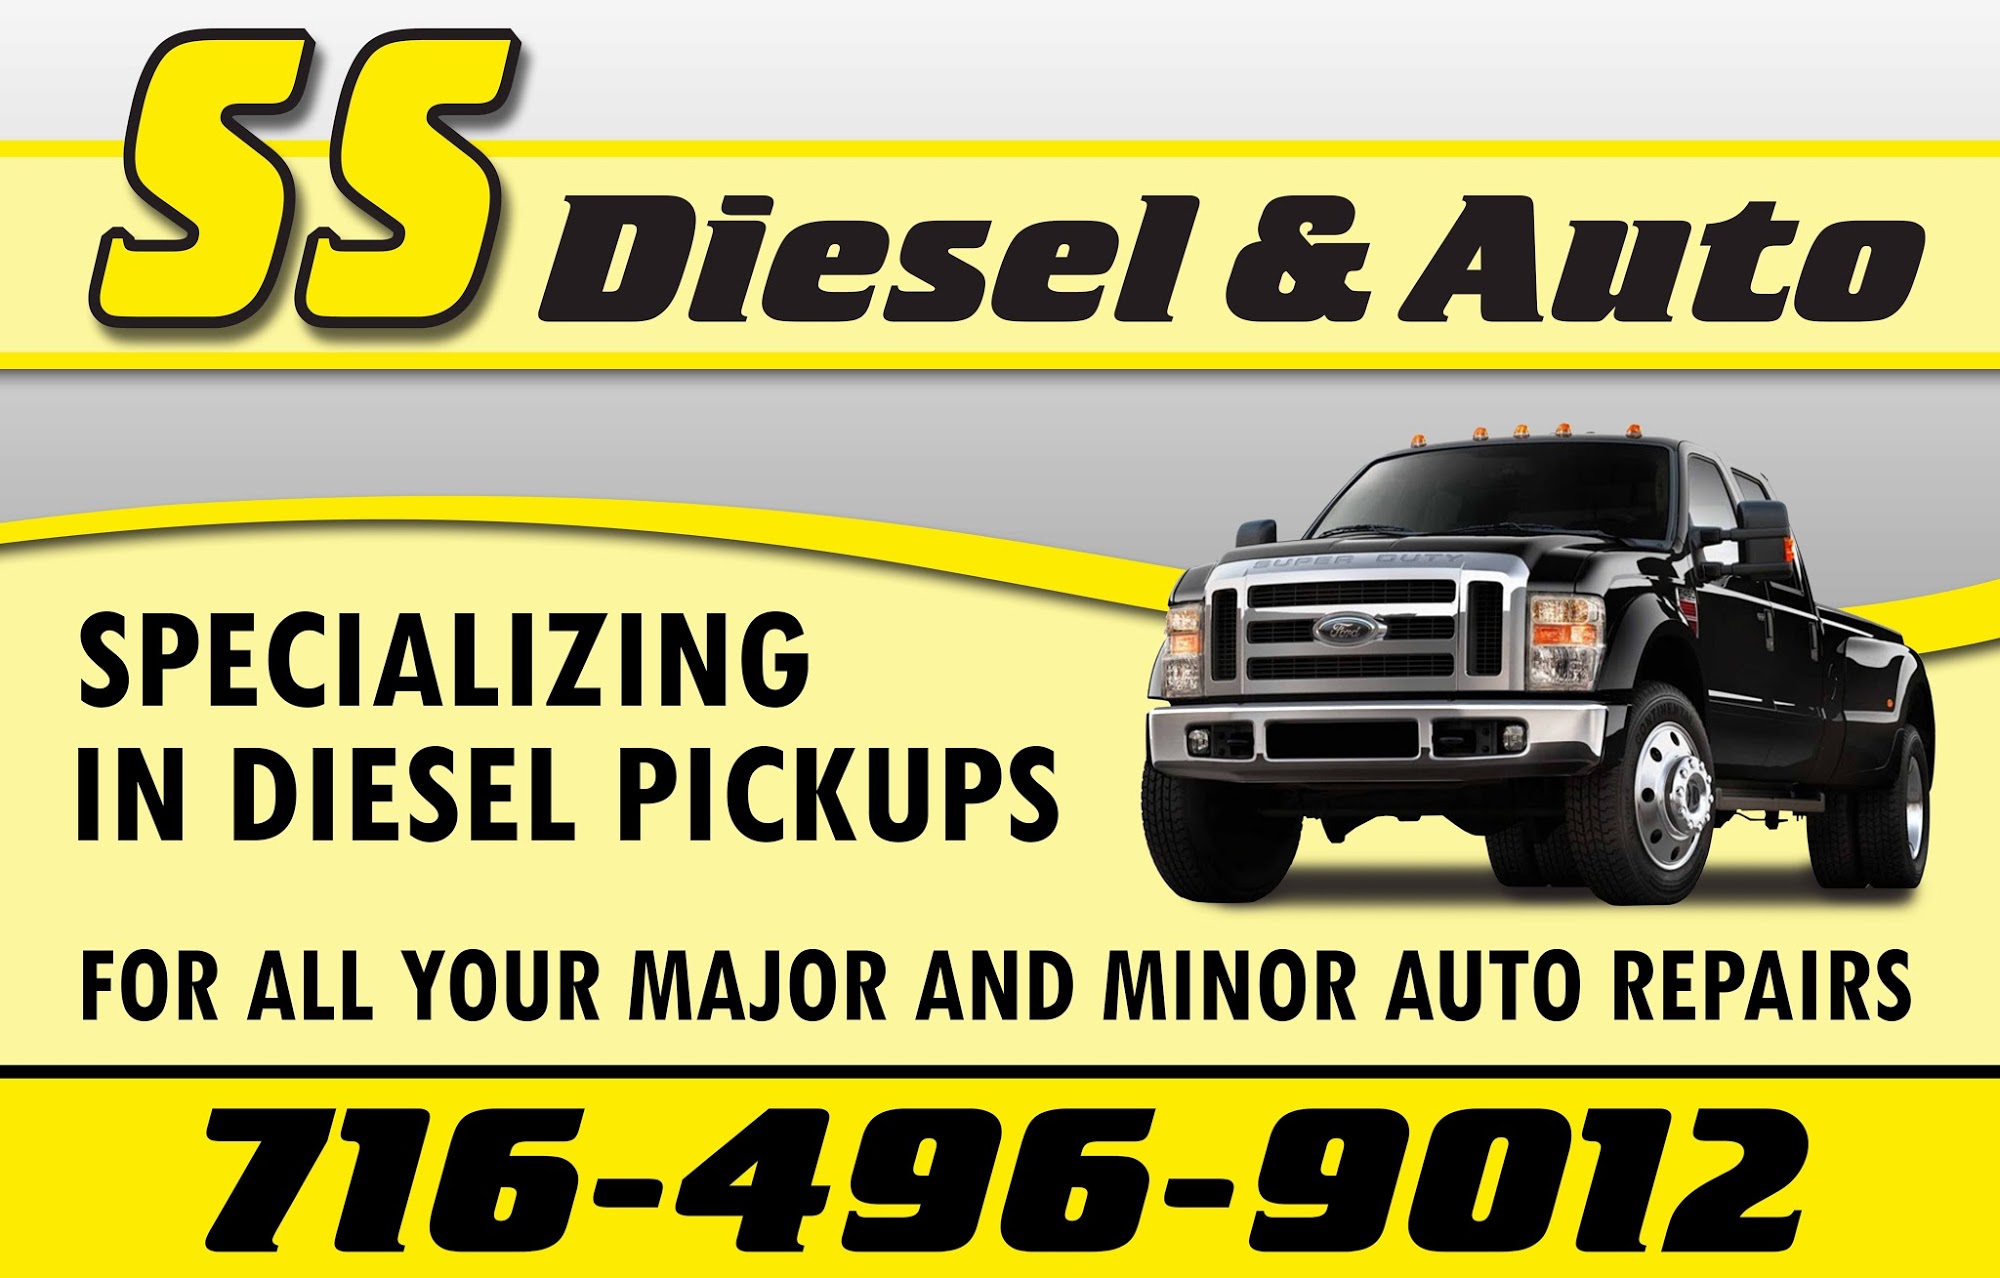 S S Diesel & Auto